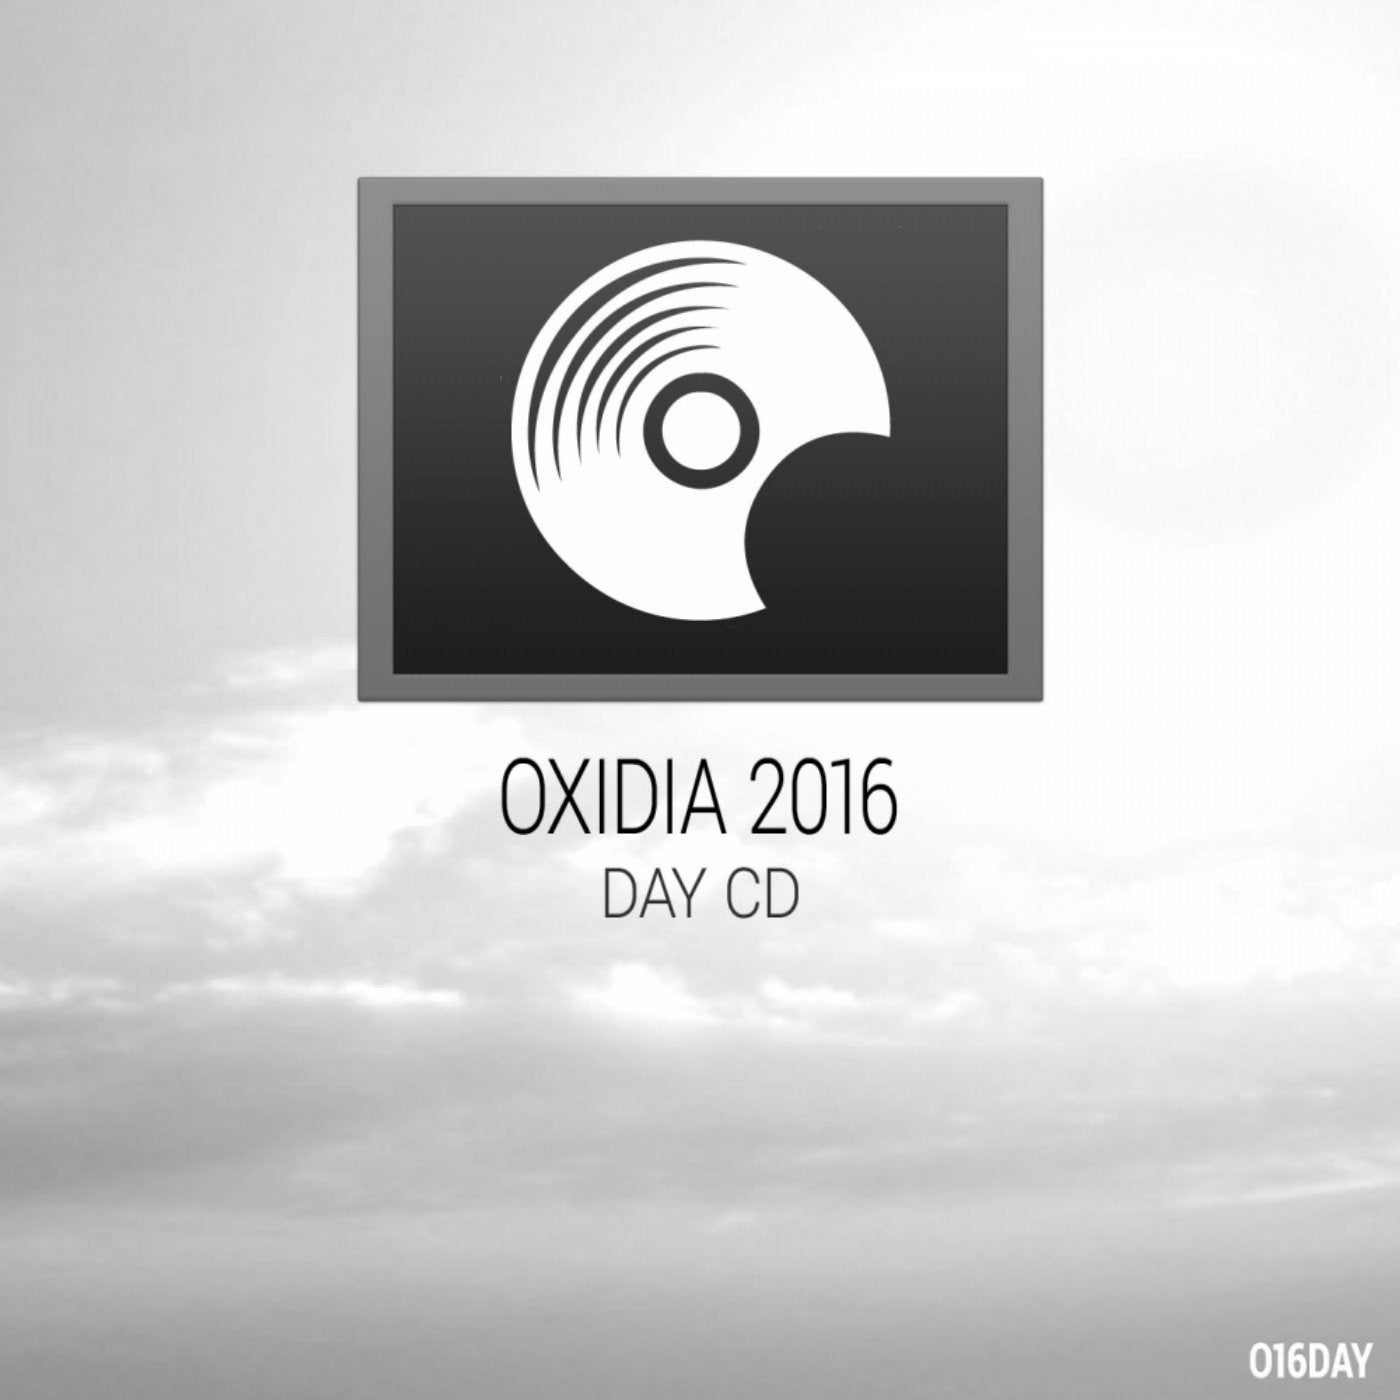 Oxidia 2016 Day